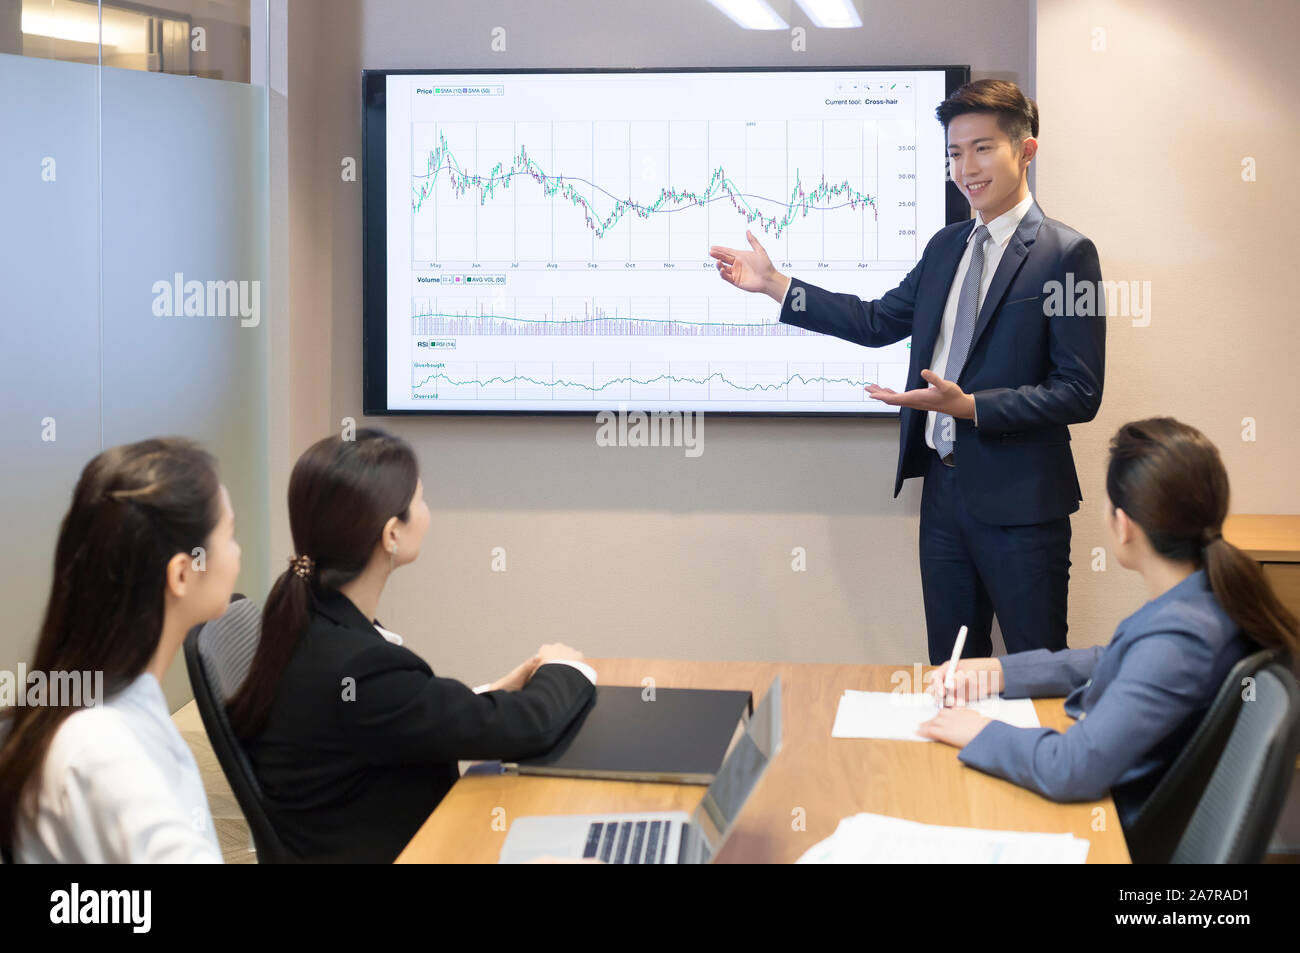 Joven hombre de negocios sonriente en un traje dando una presentación en una sala de juntas con un gráfico en una pantalla detrás de él y con otros tres empresarios Foto de stock